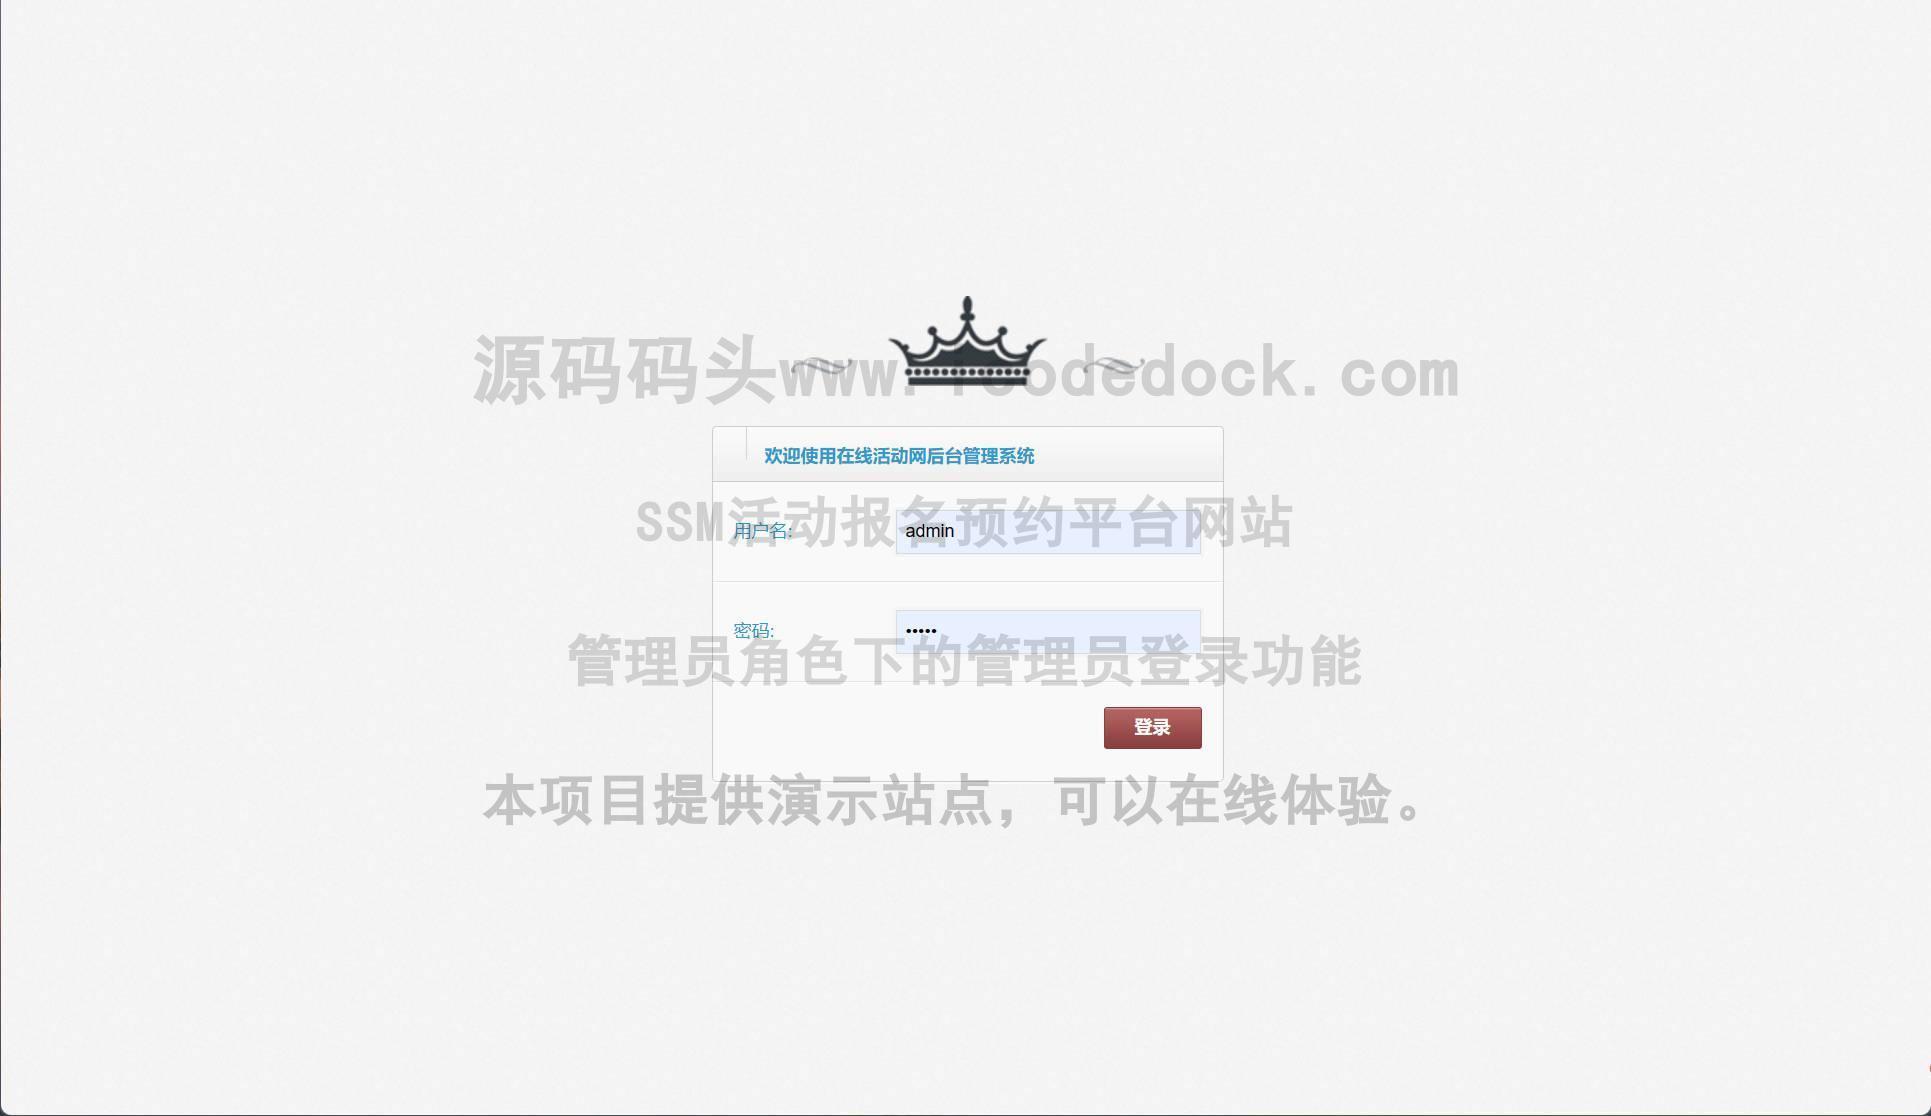 源码码头-SSM活动报名预约平台网站-管理员角色-管理员登录